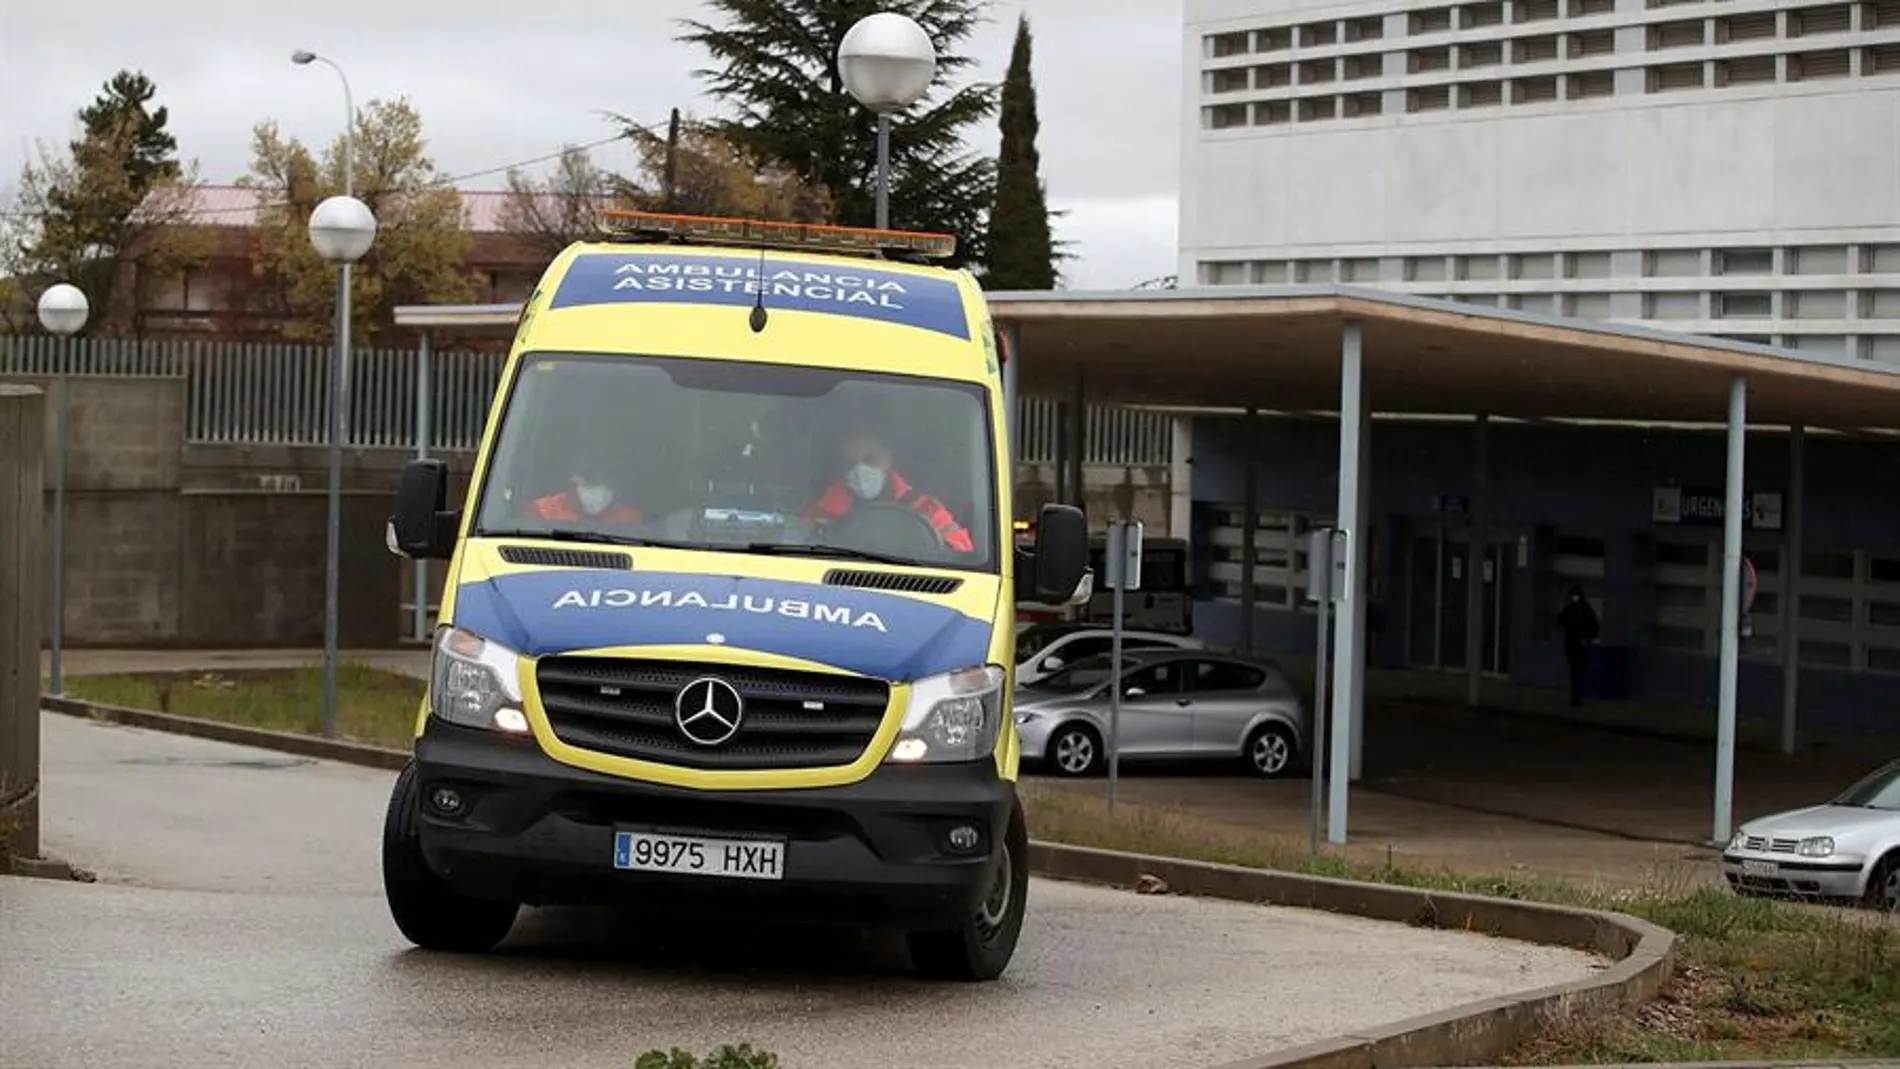 Una ambulancia en las inmediaciones del Hospital Santa Bárbara de Soria